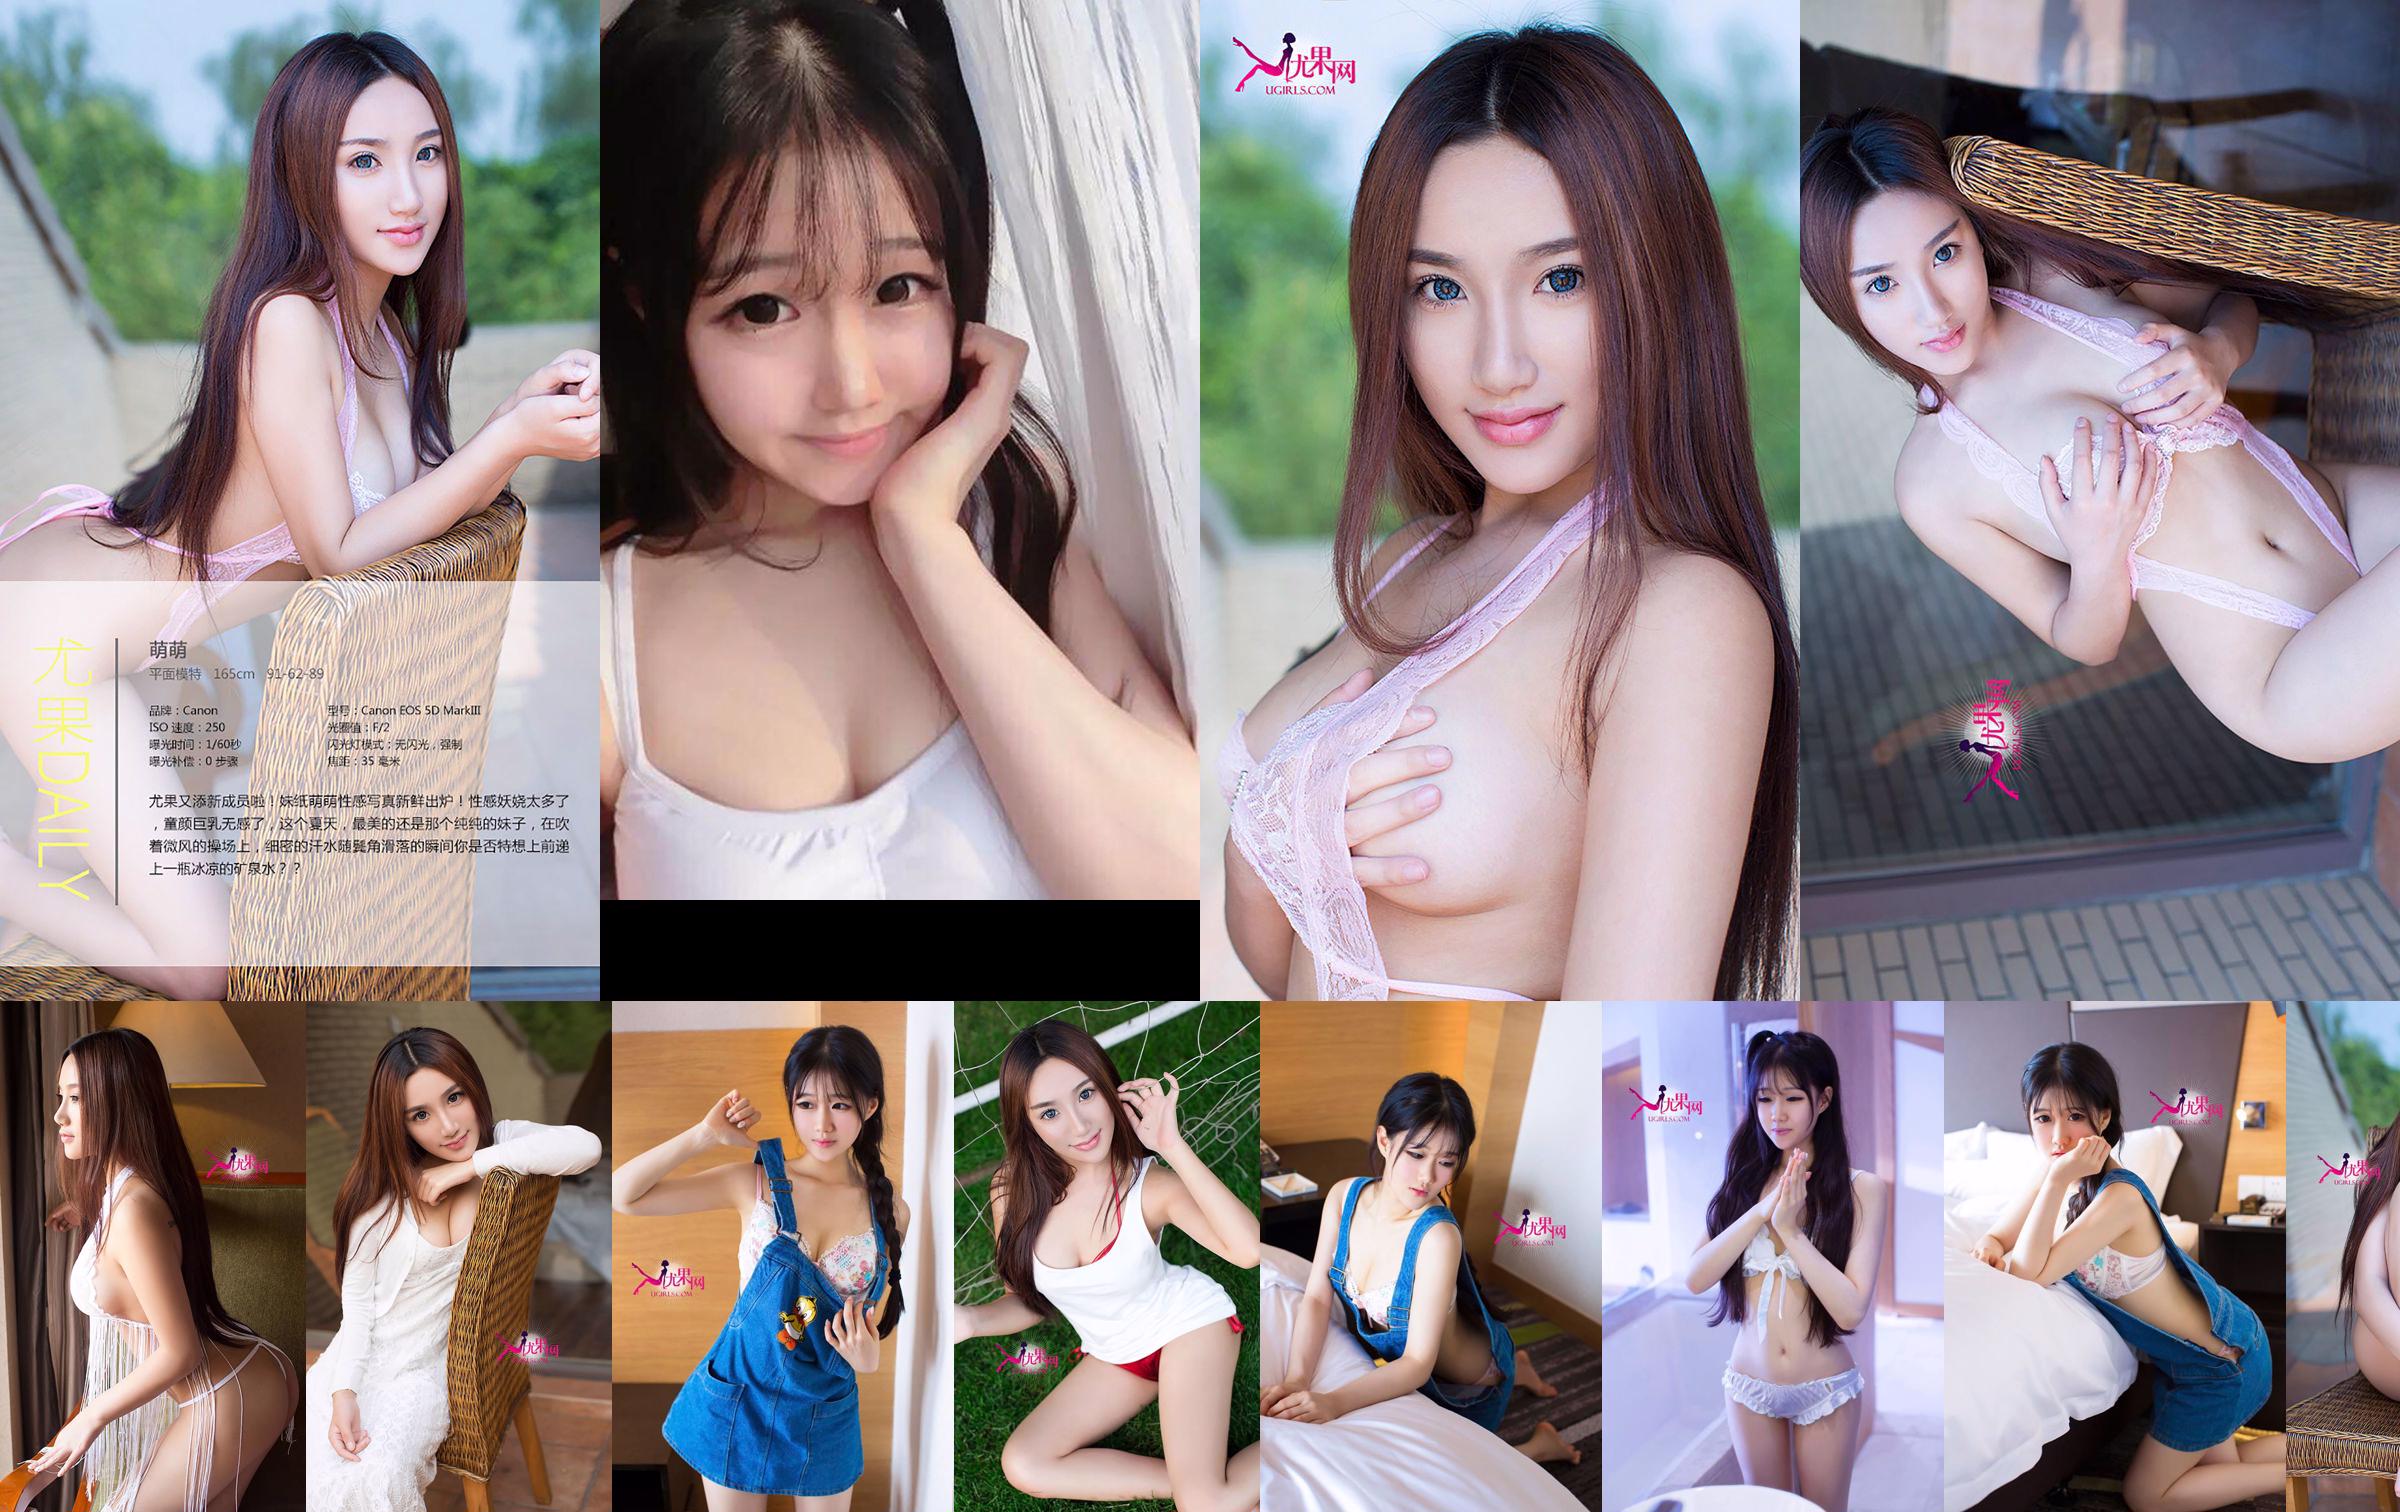 Chen Yumeng "Gadis Cantik Itu Tidak Berbahaya dan Membangkitkan Cinta" [Ugirls] No.098 No.d8f83b Halaman 4